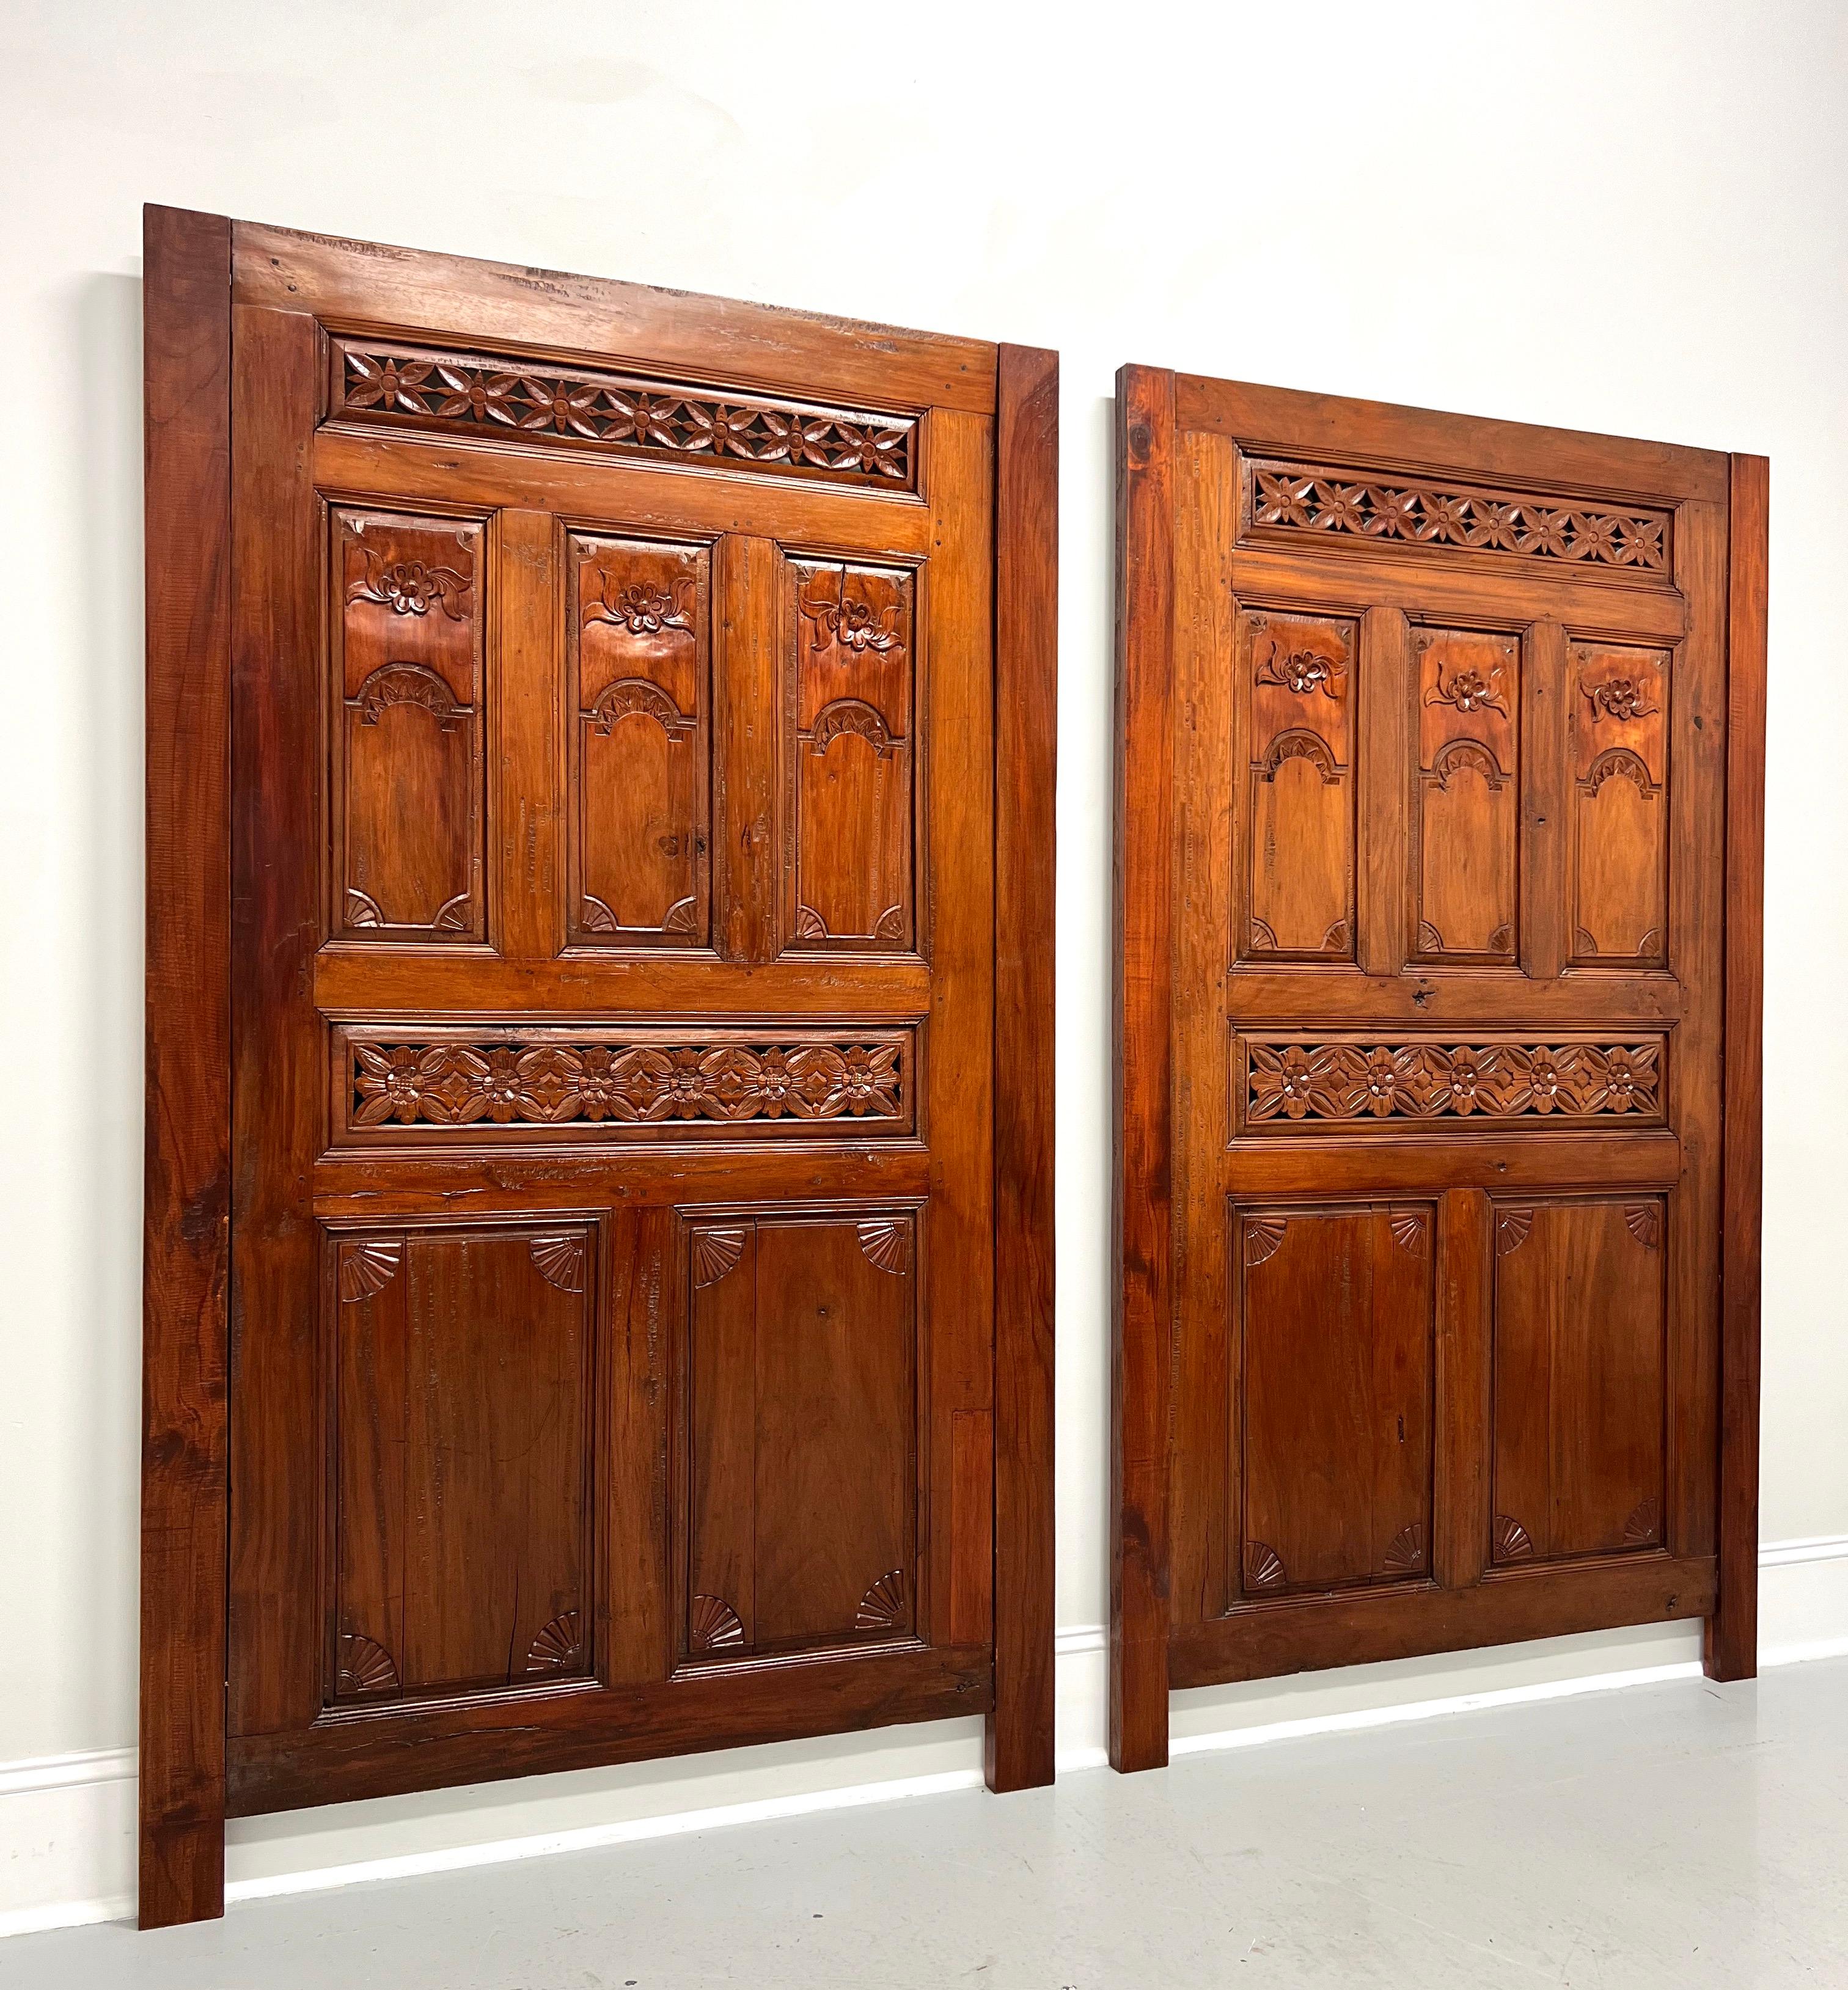 Ein Paar geschnitzte balinesische Türen im asiatischen Stil, die als Kopfteil umfunktioniert wurden, ohne Markenzeichen. Türen aus massivem Mahagoni mit handgeschnitzten Details, montiert an passenden Mahagoni-Seitenteilen zum Aufstellen, und eine